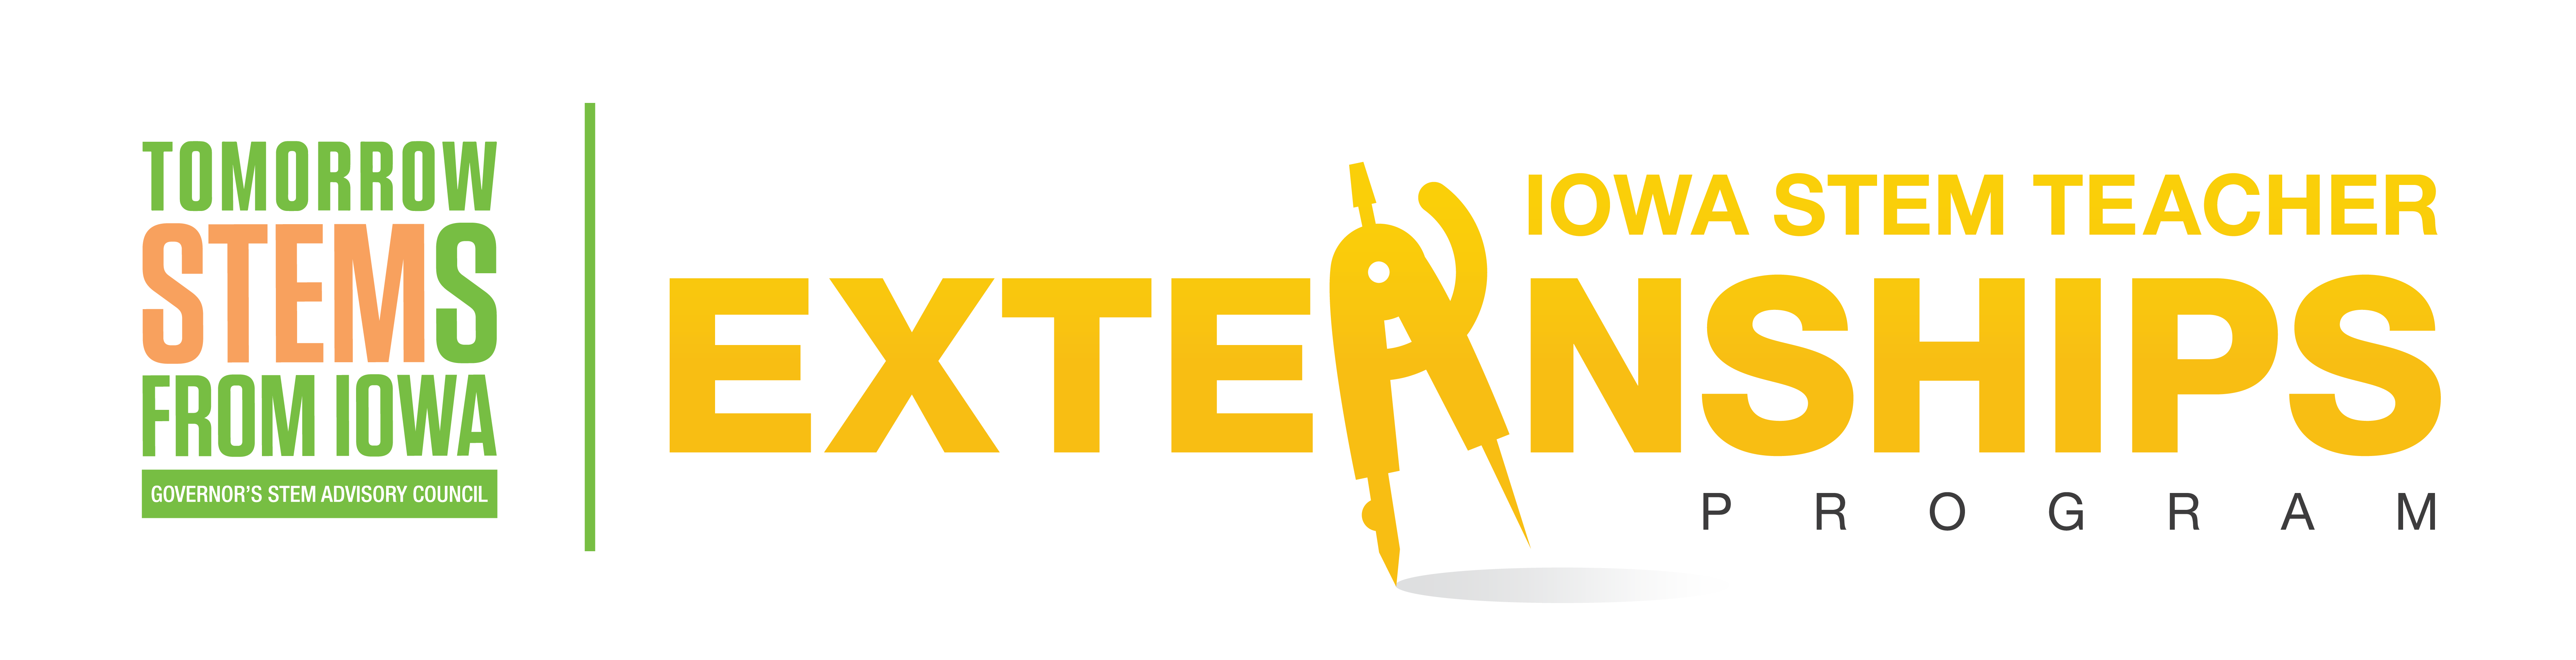 STEM Teacher Externships Program logo